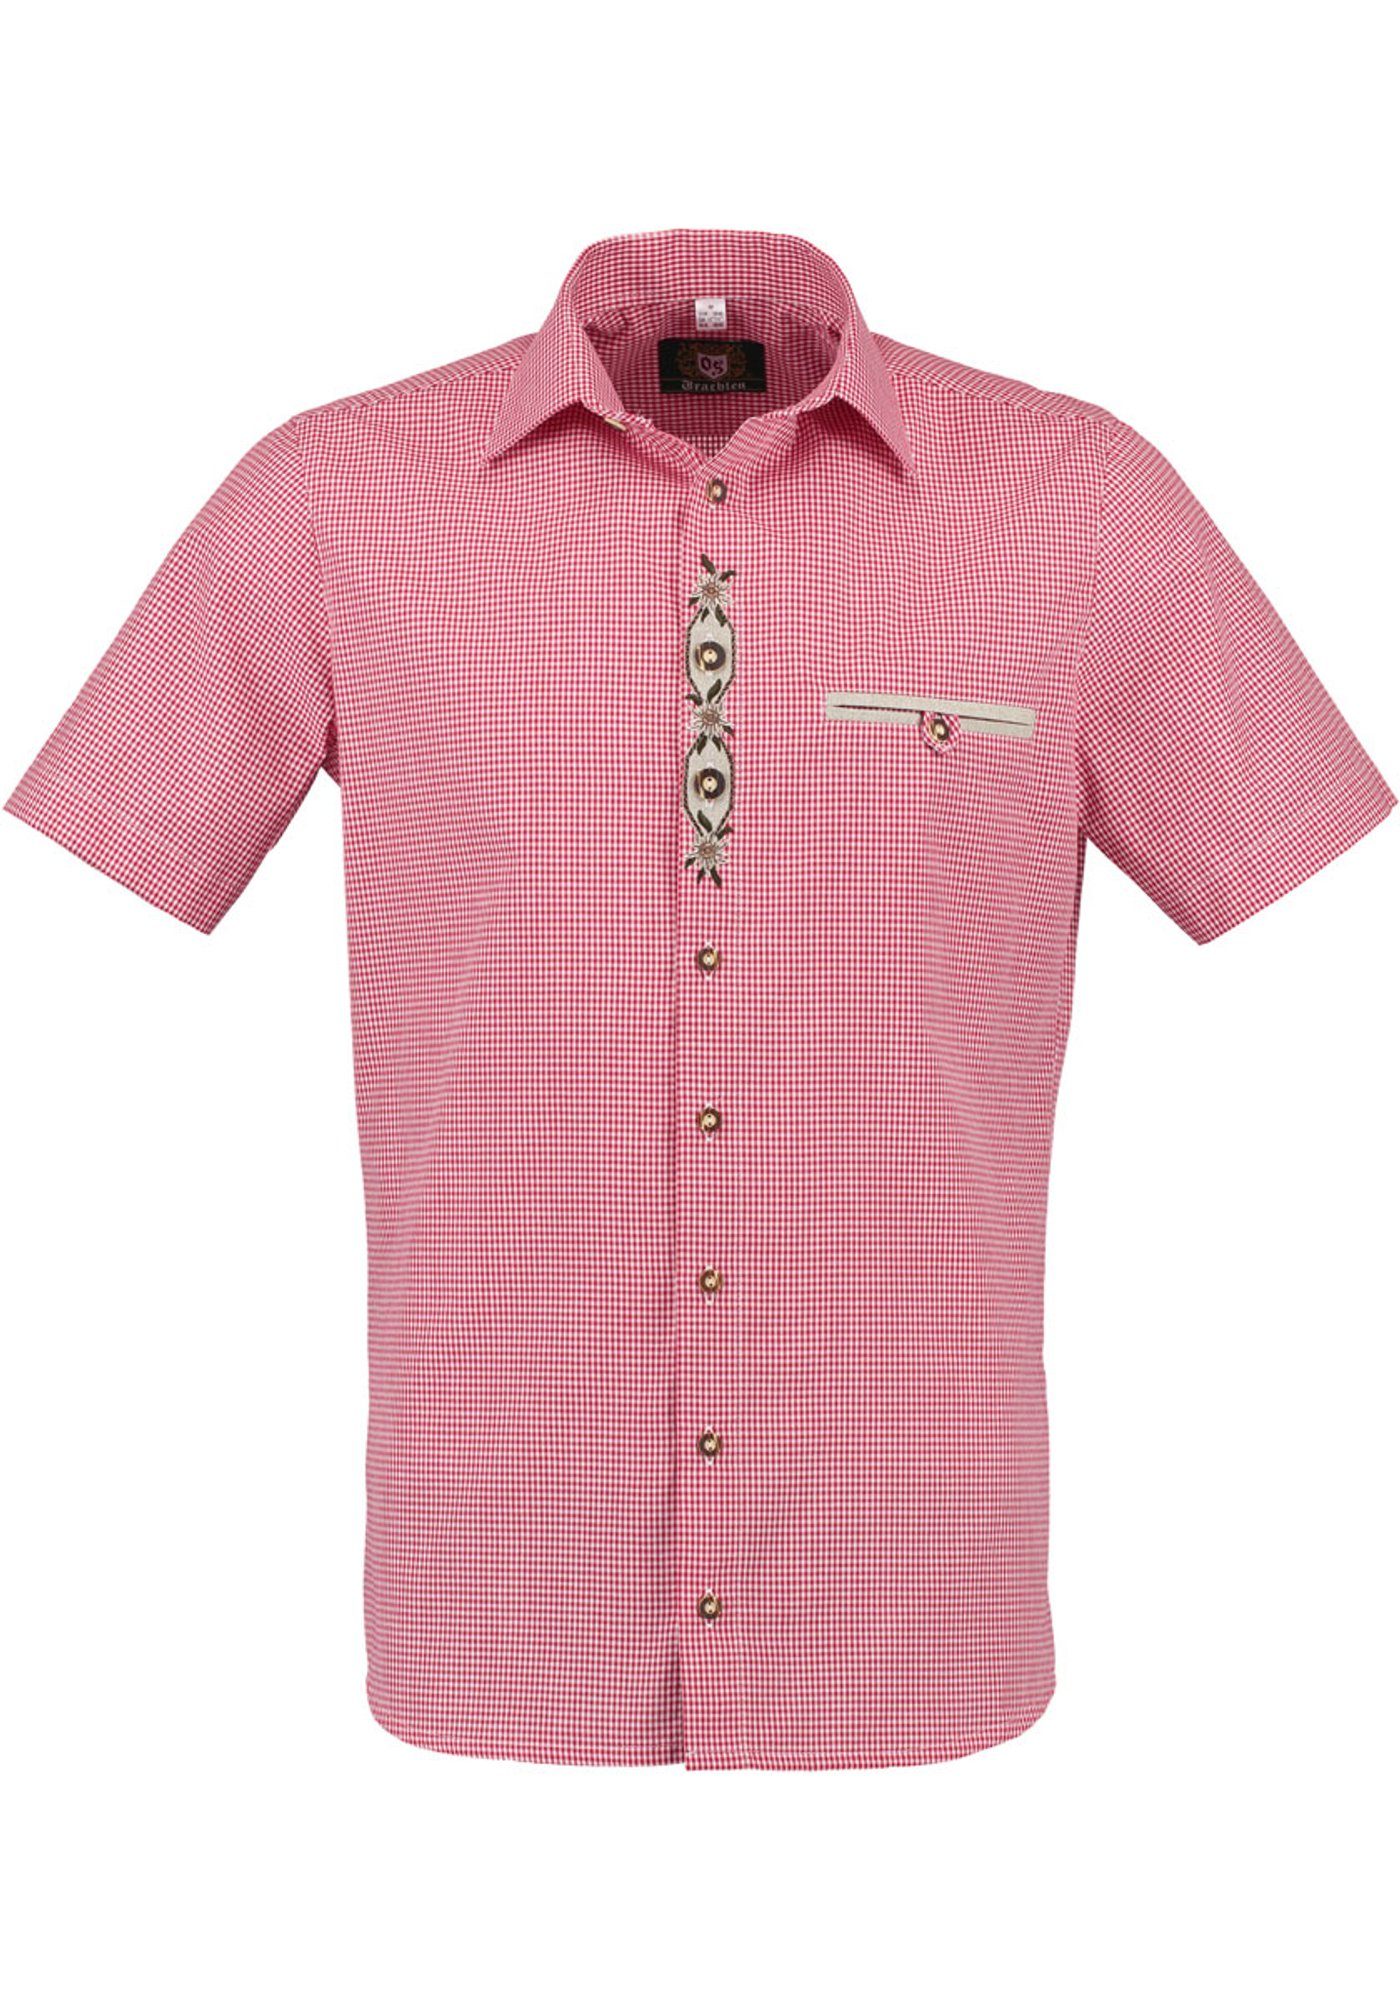 Trachtenhemd auf hochrot mit OS-Trachten Paspeltasche, Weonys der Knopfleiste Kurzarmhemd Edelweiß-Stickerei